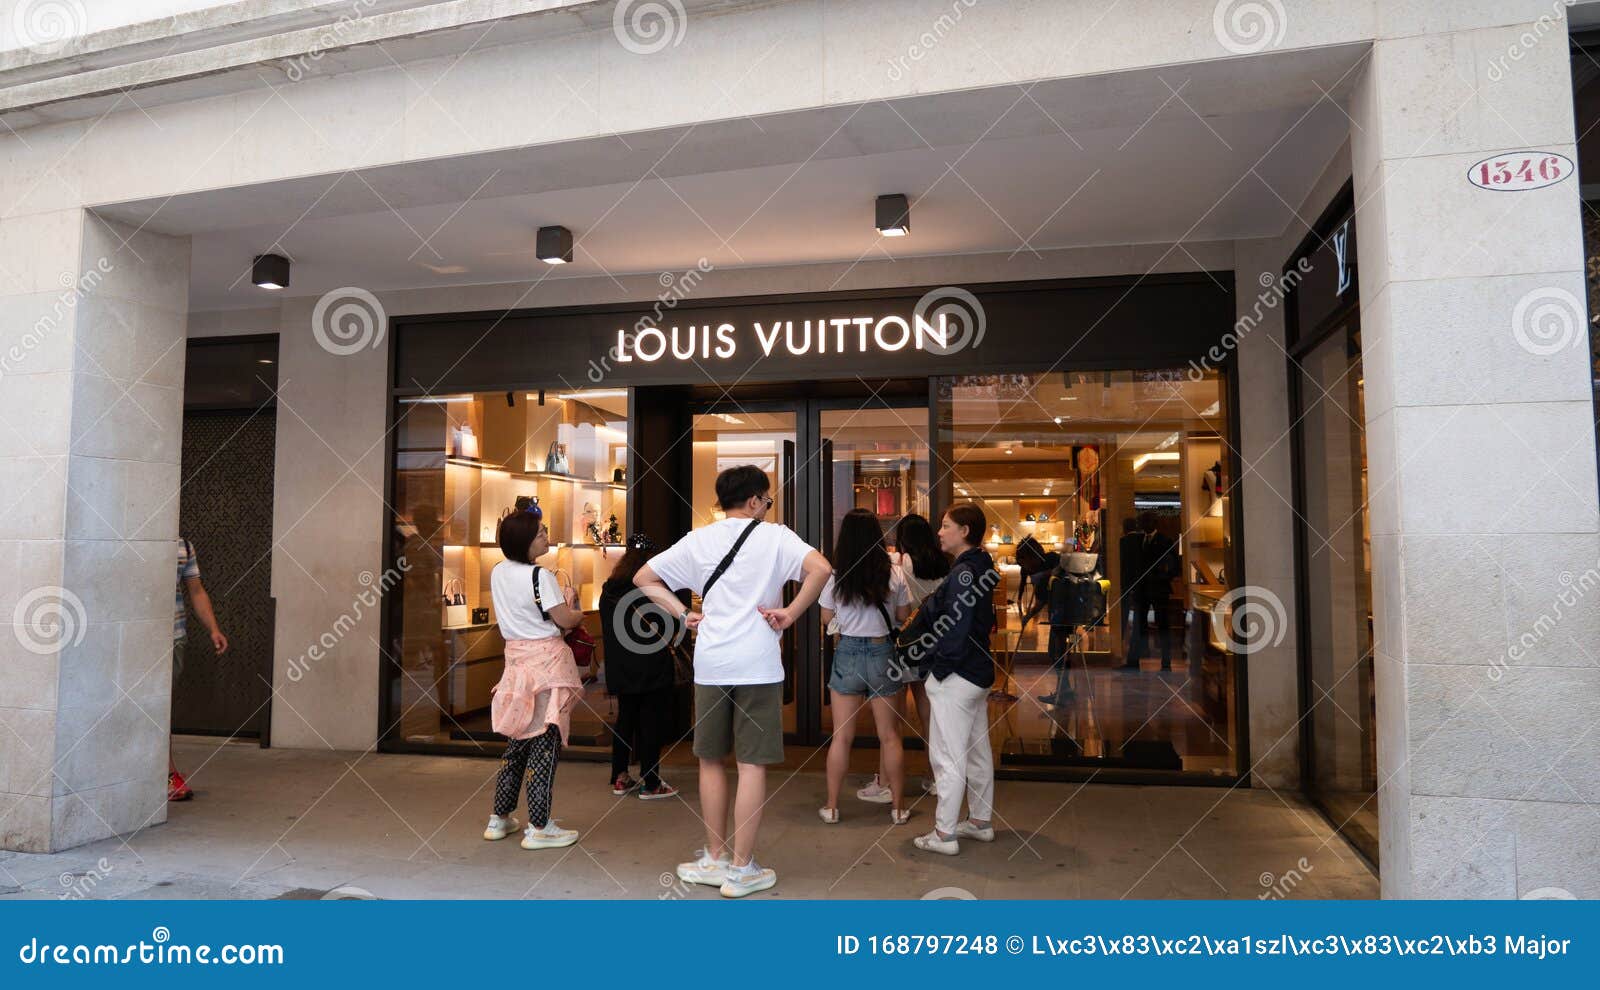 Louis Vuitton Luxury Store Front Jacksonville Stock Photo 1051335515